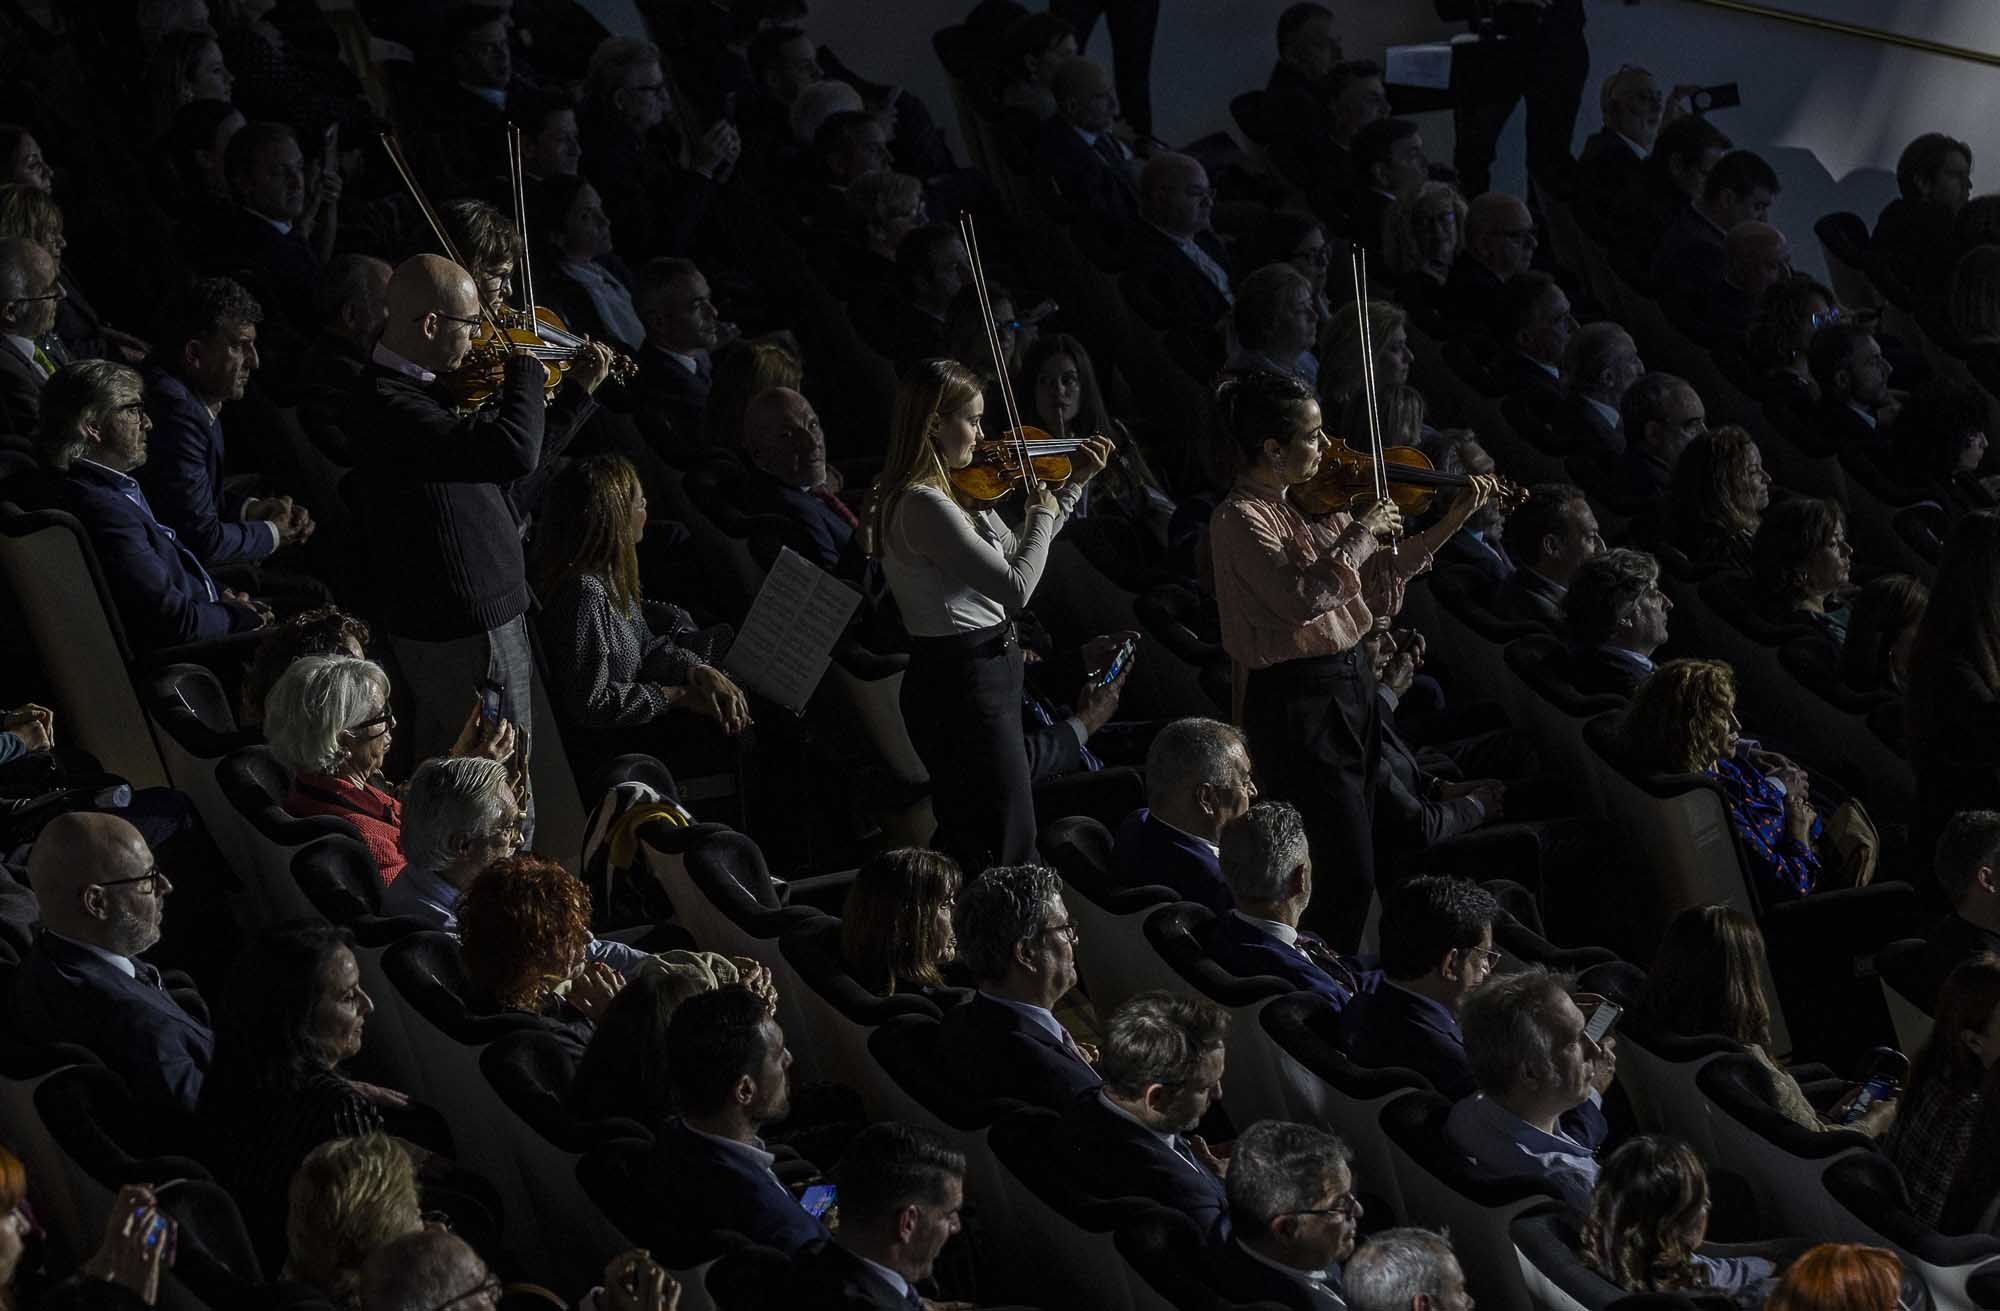 Las mejores imágenes de la apoteósica interpretación de la orquesta ADDA Simfónica dirigida por Josep Vicent en la 39 edición de Gala de los Importantes de Información 2023